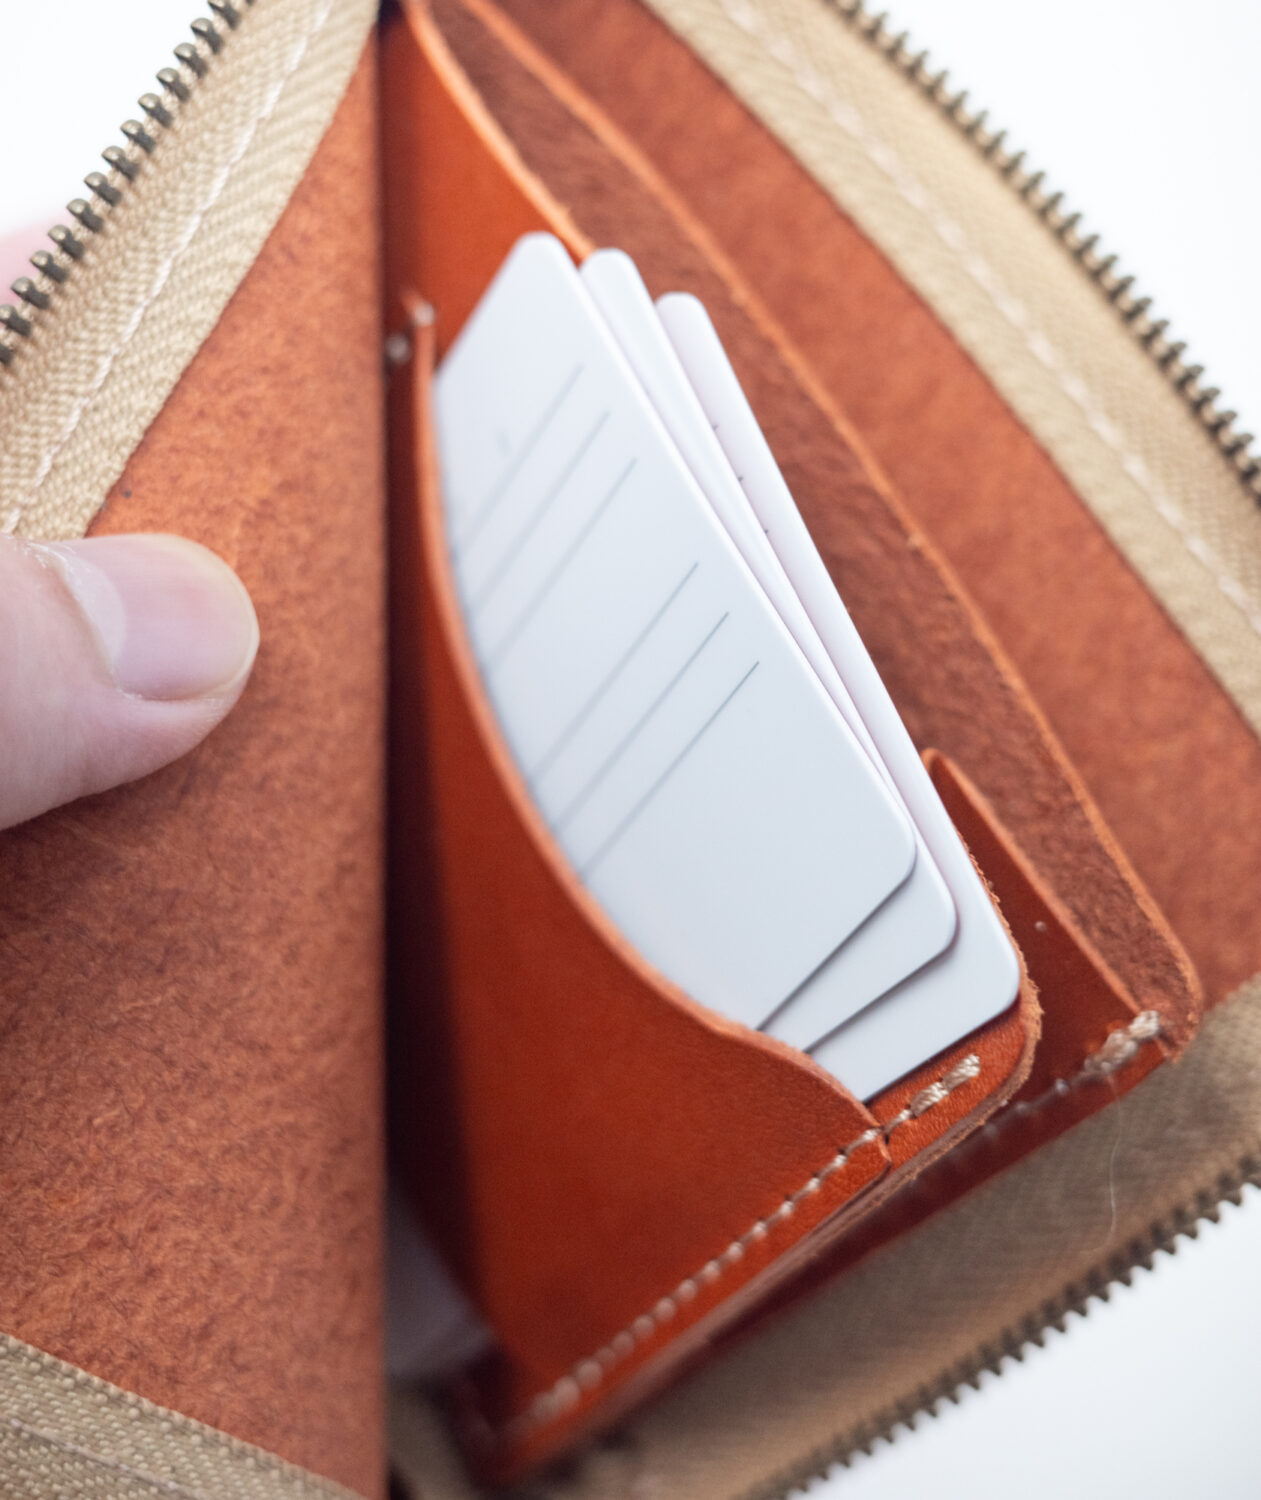 ネイティブ クリエイションのL字ファスナー薄型ミニ財布の内側ポケットのカードを入れた様子には3枚まで収納可能